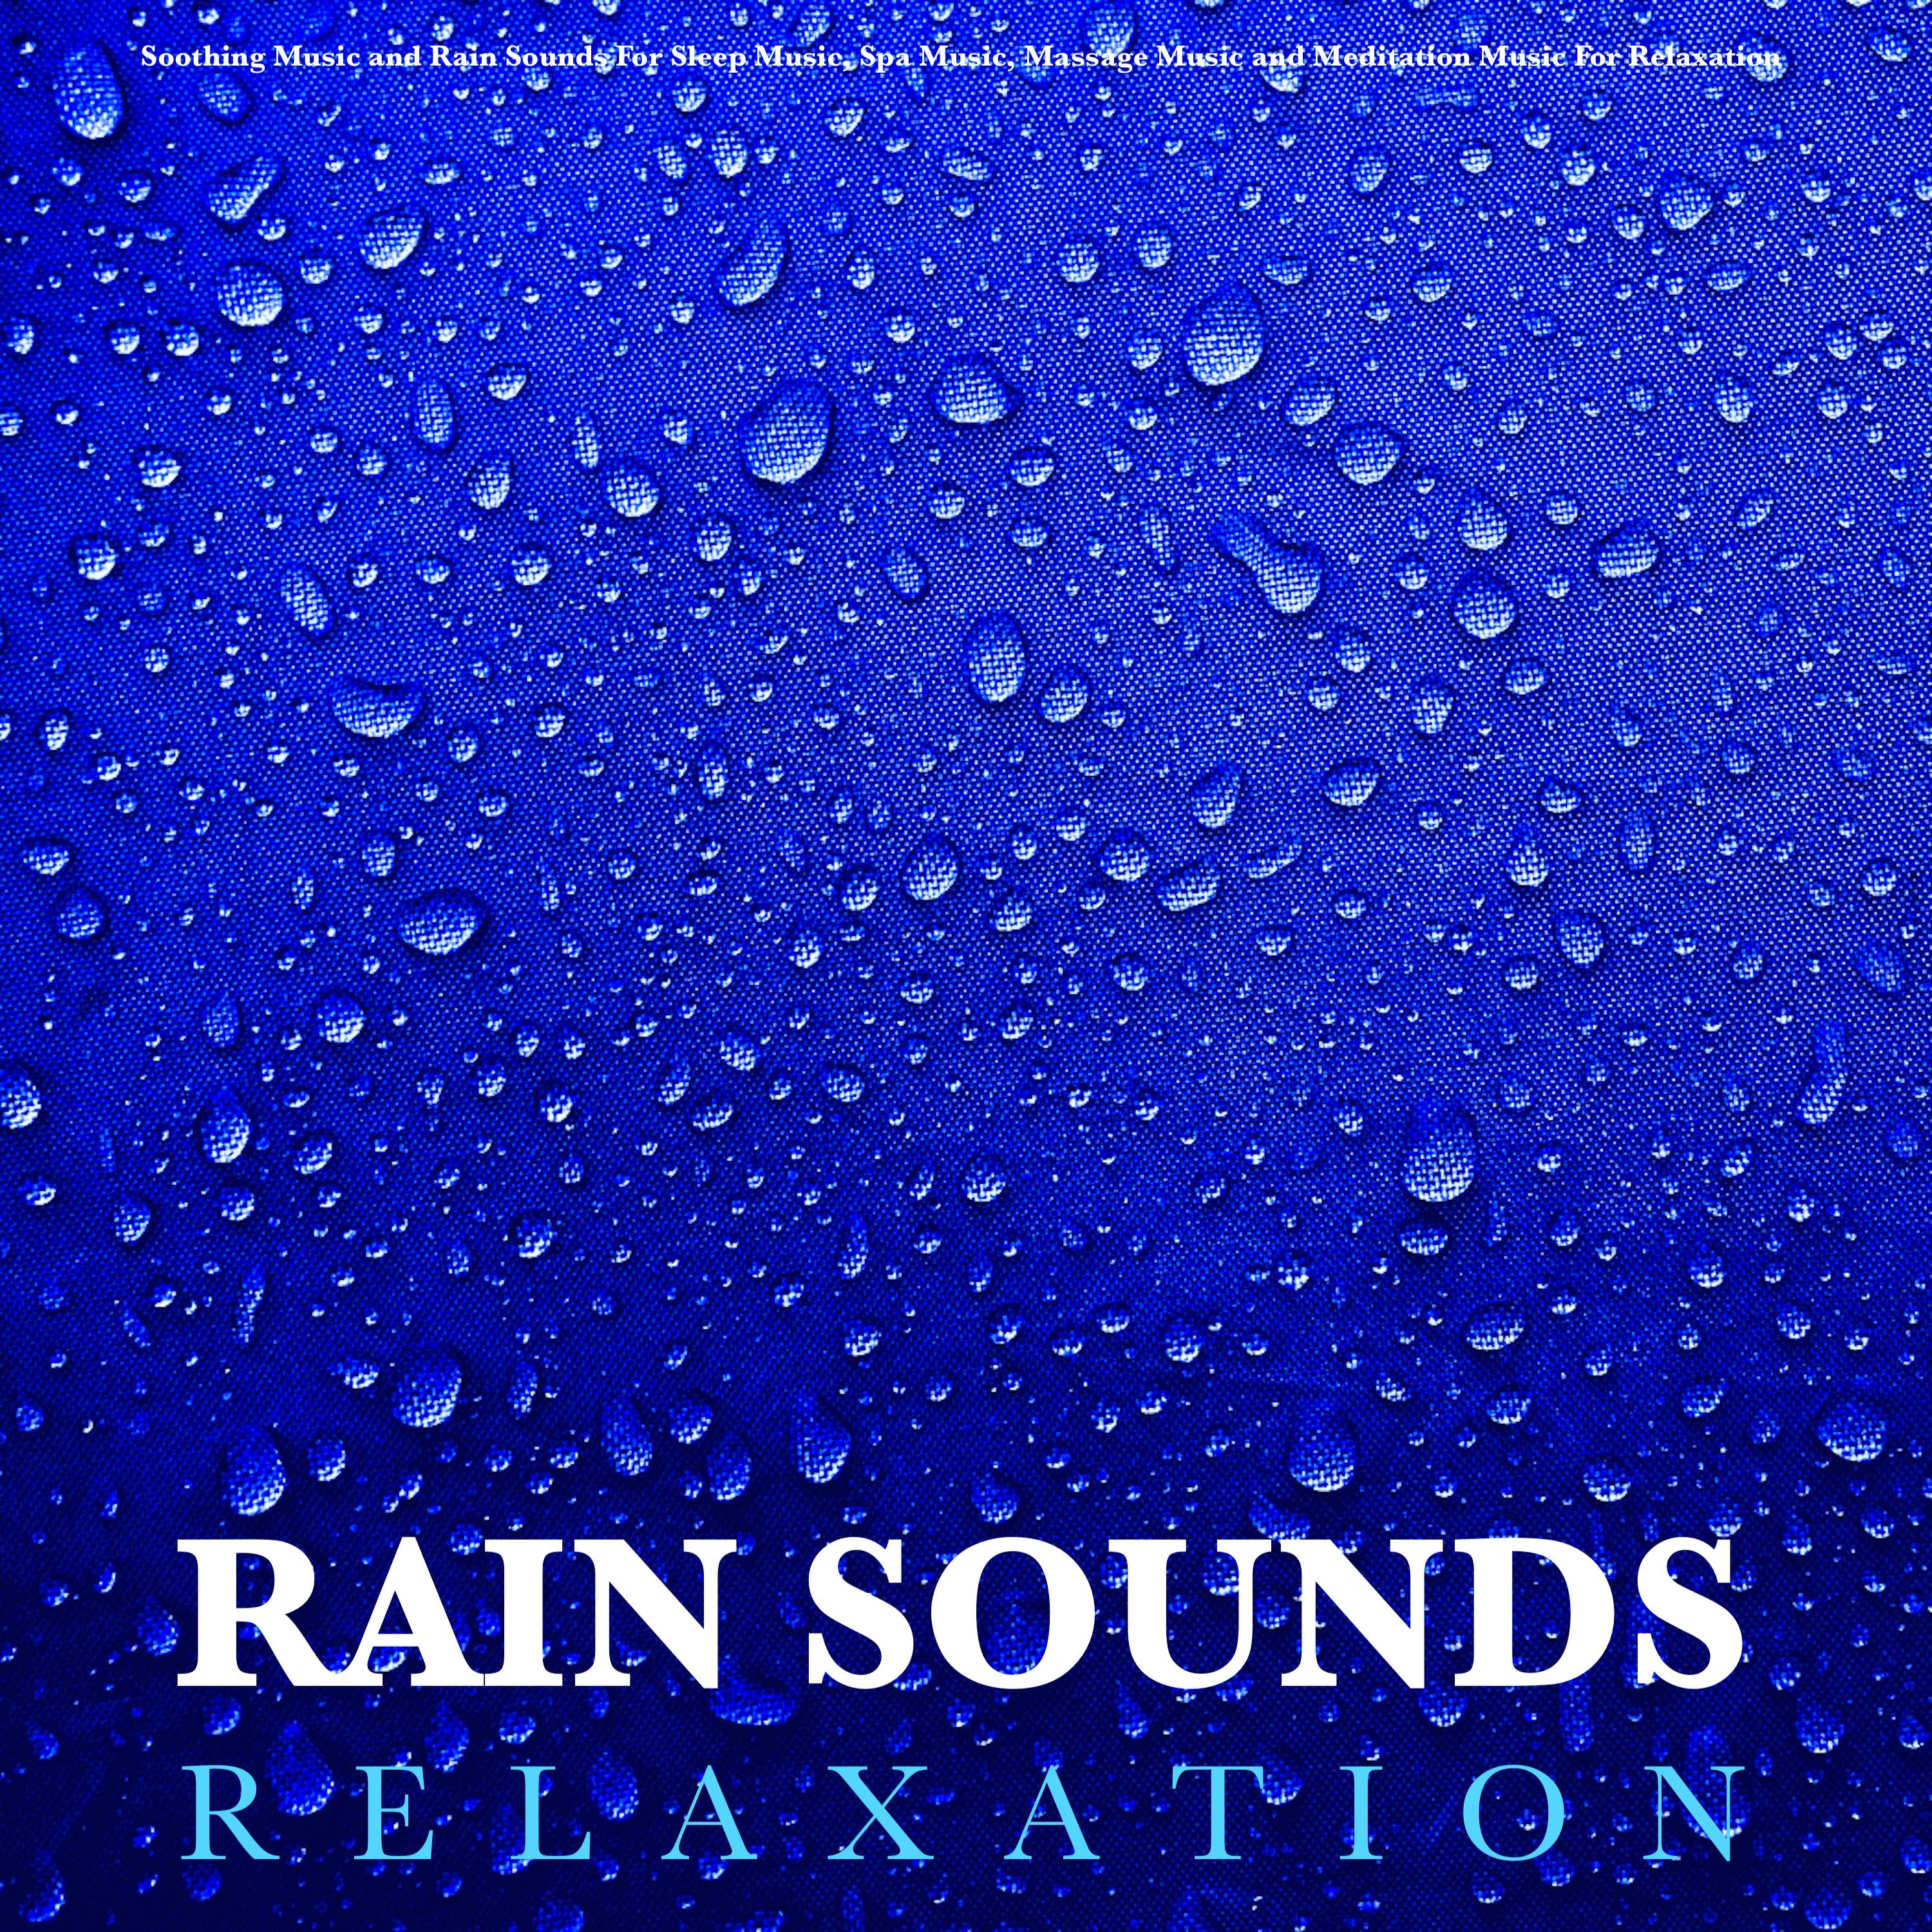 Rain Sounds To Put You To Sleep